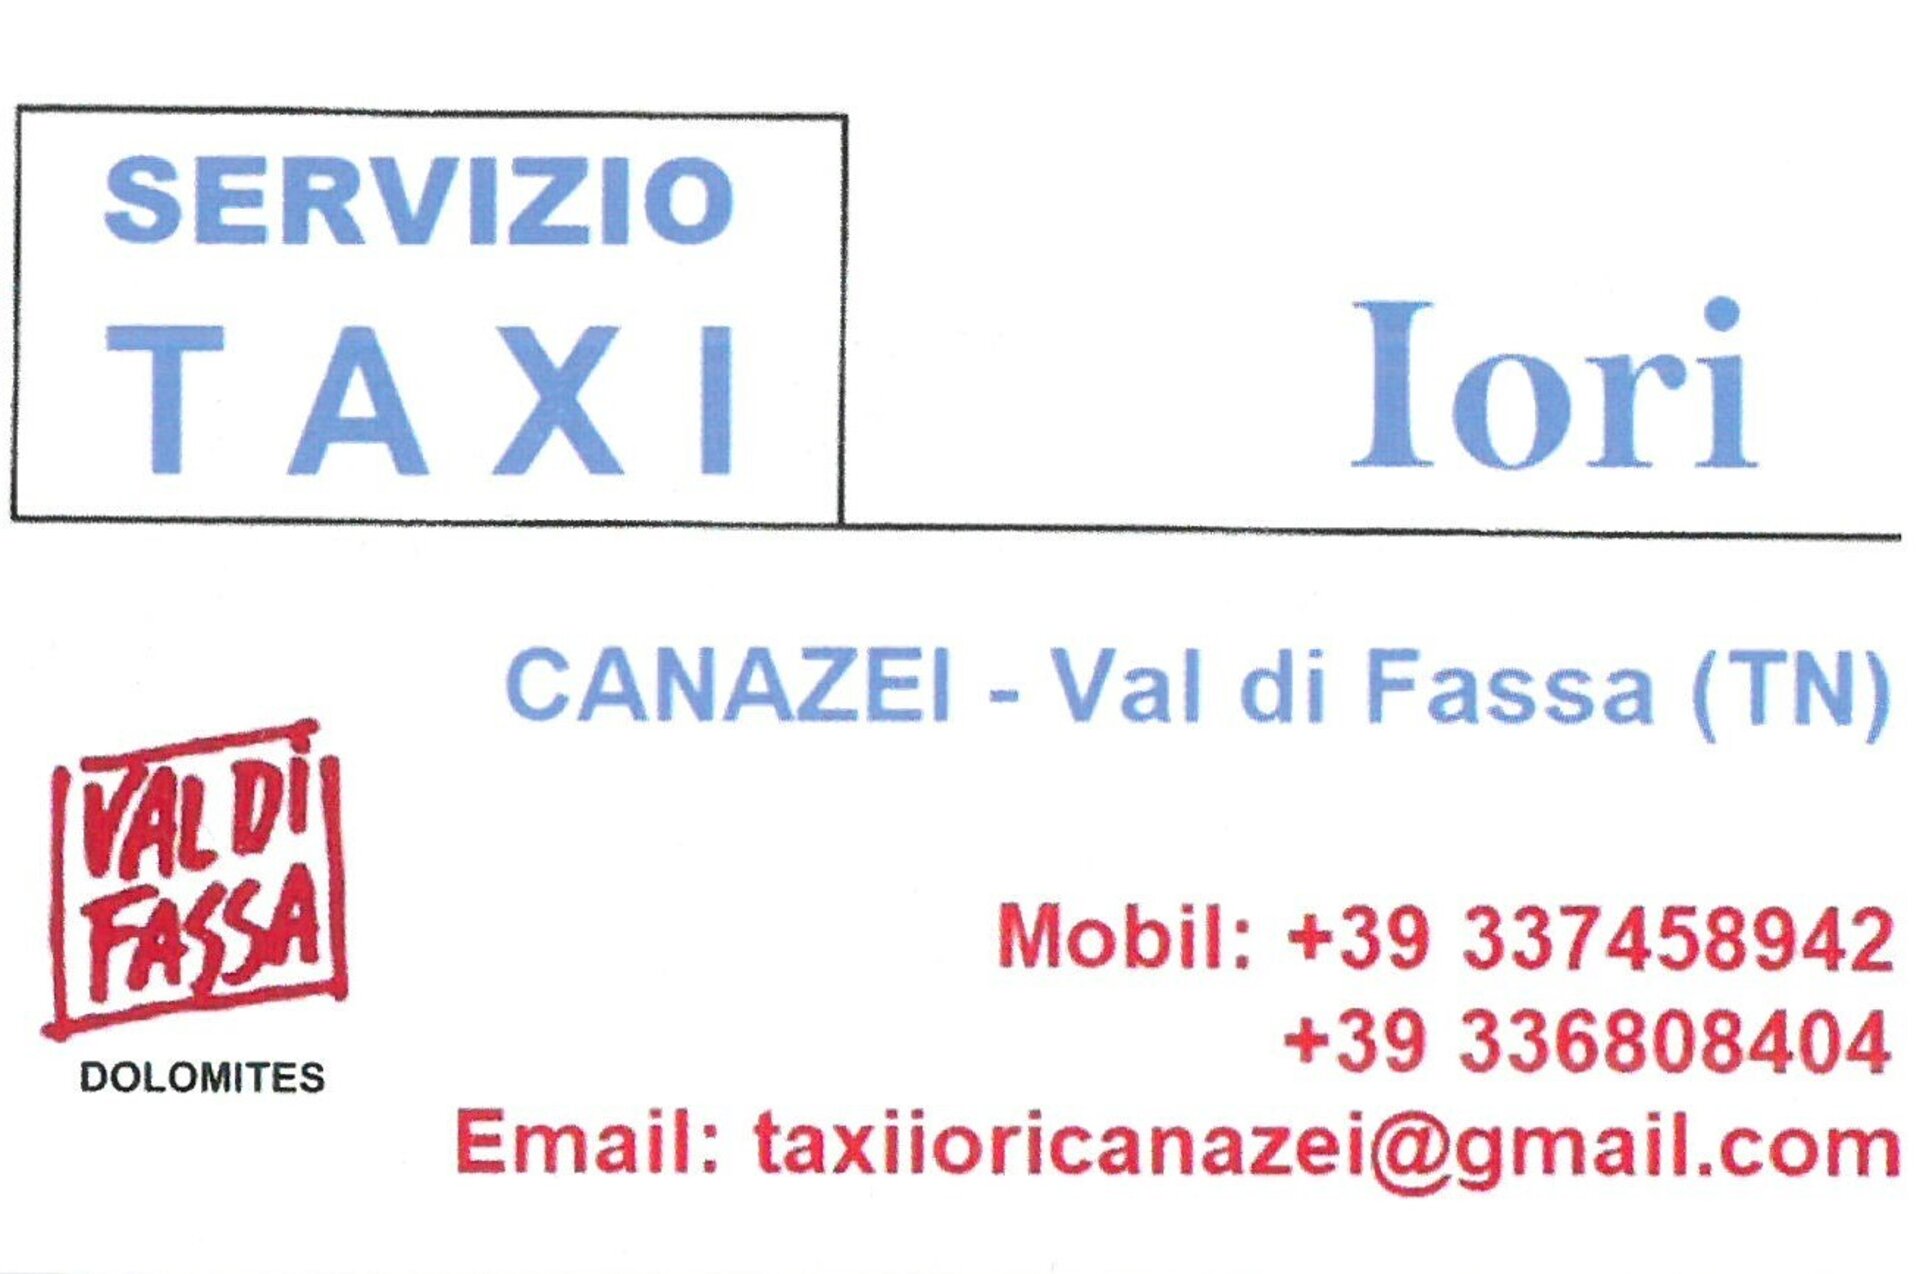 Taxi Iori